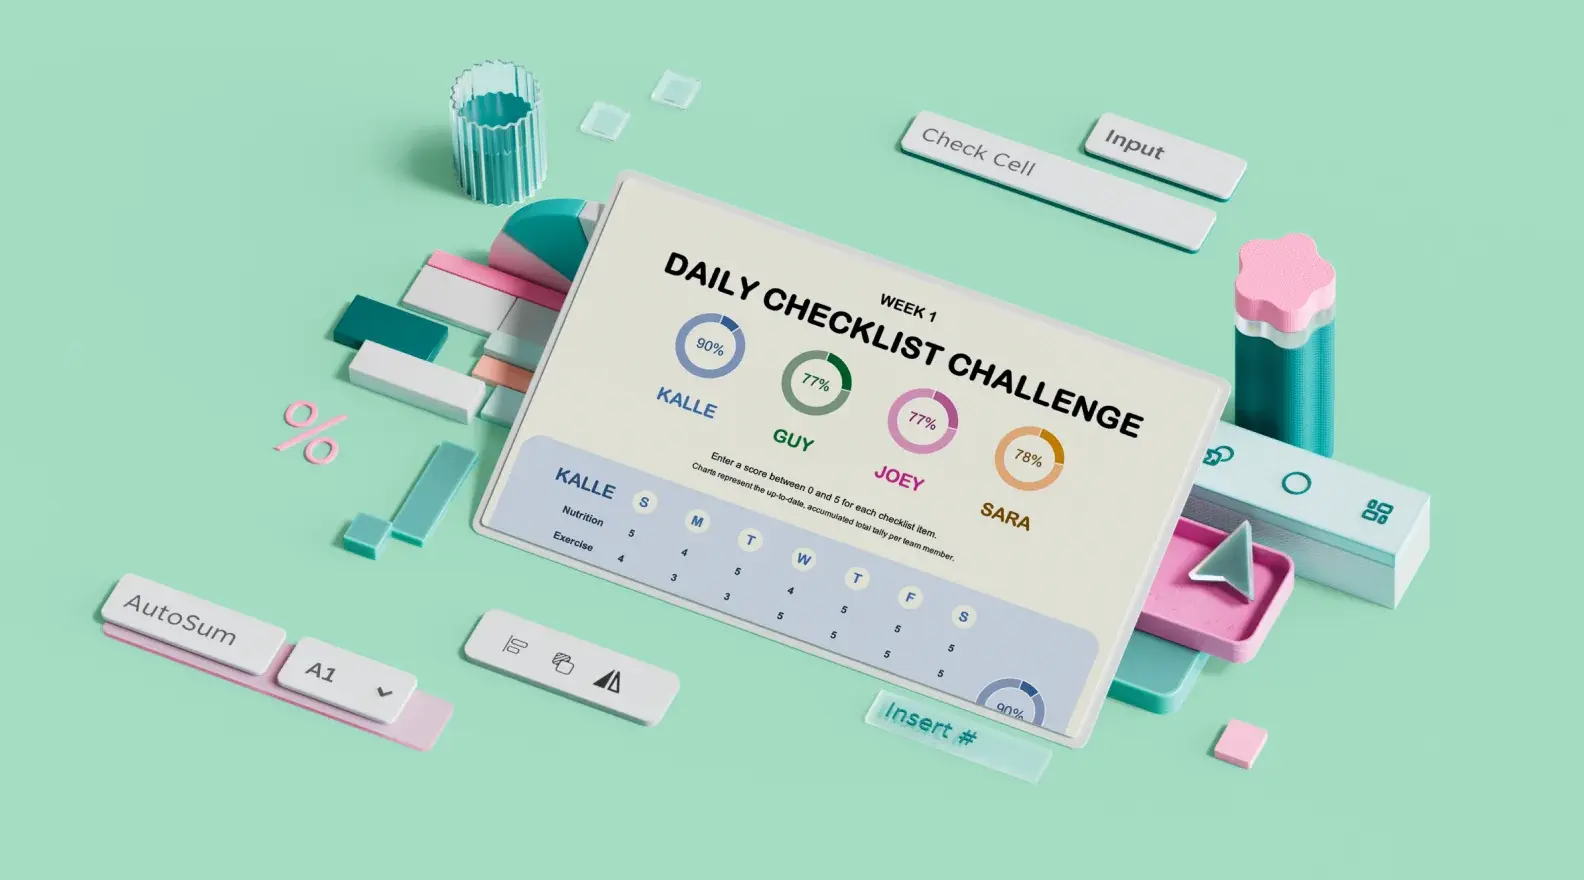 Mall med checklista för att hålla daglig koll på hälsan, omgiven av 3D-designelement